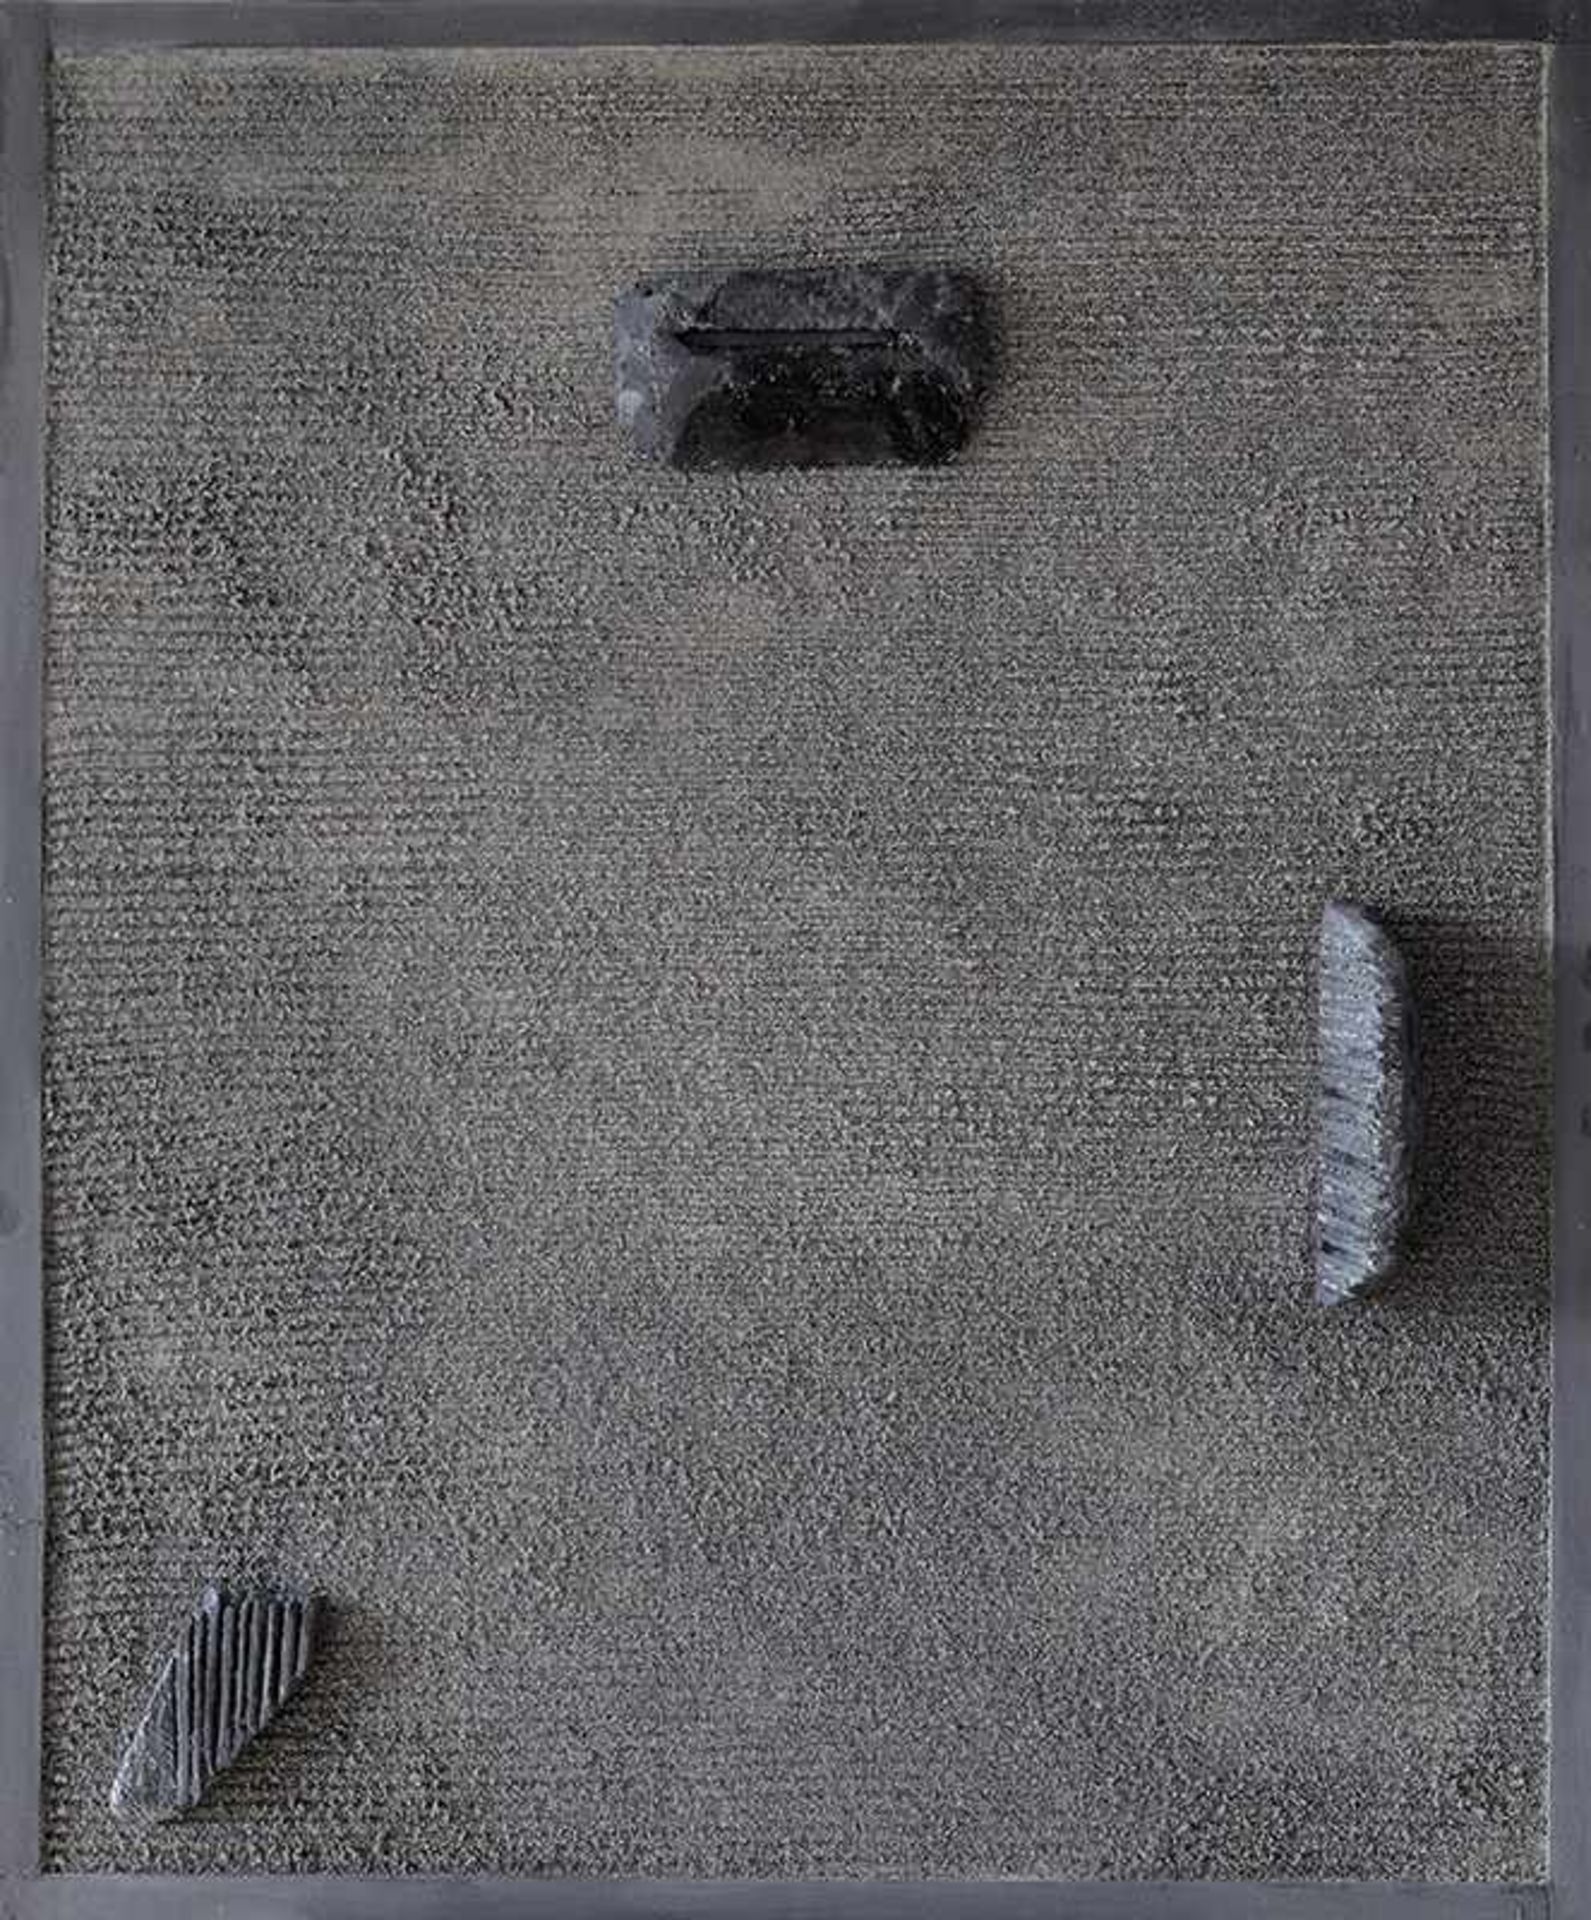 Japanischer GartenHeinz Mack* (*1931)1998Karree aus Basalt-Split mit drei skulpturalen Steinen. - Image 6 of 6